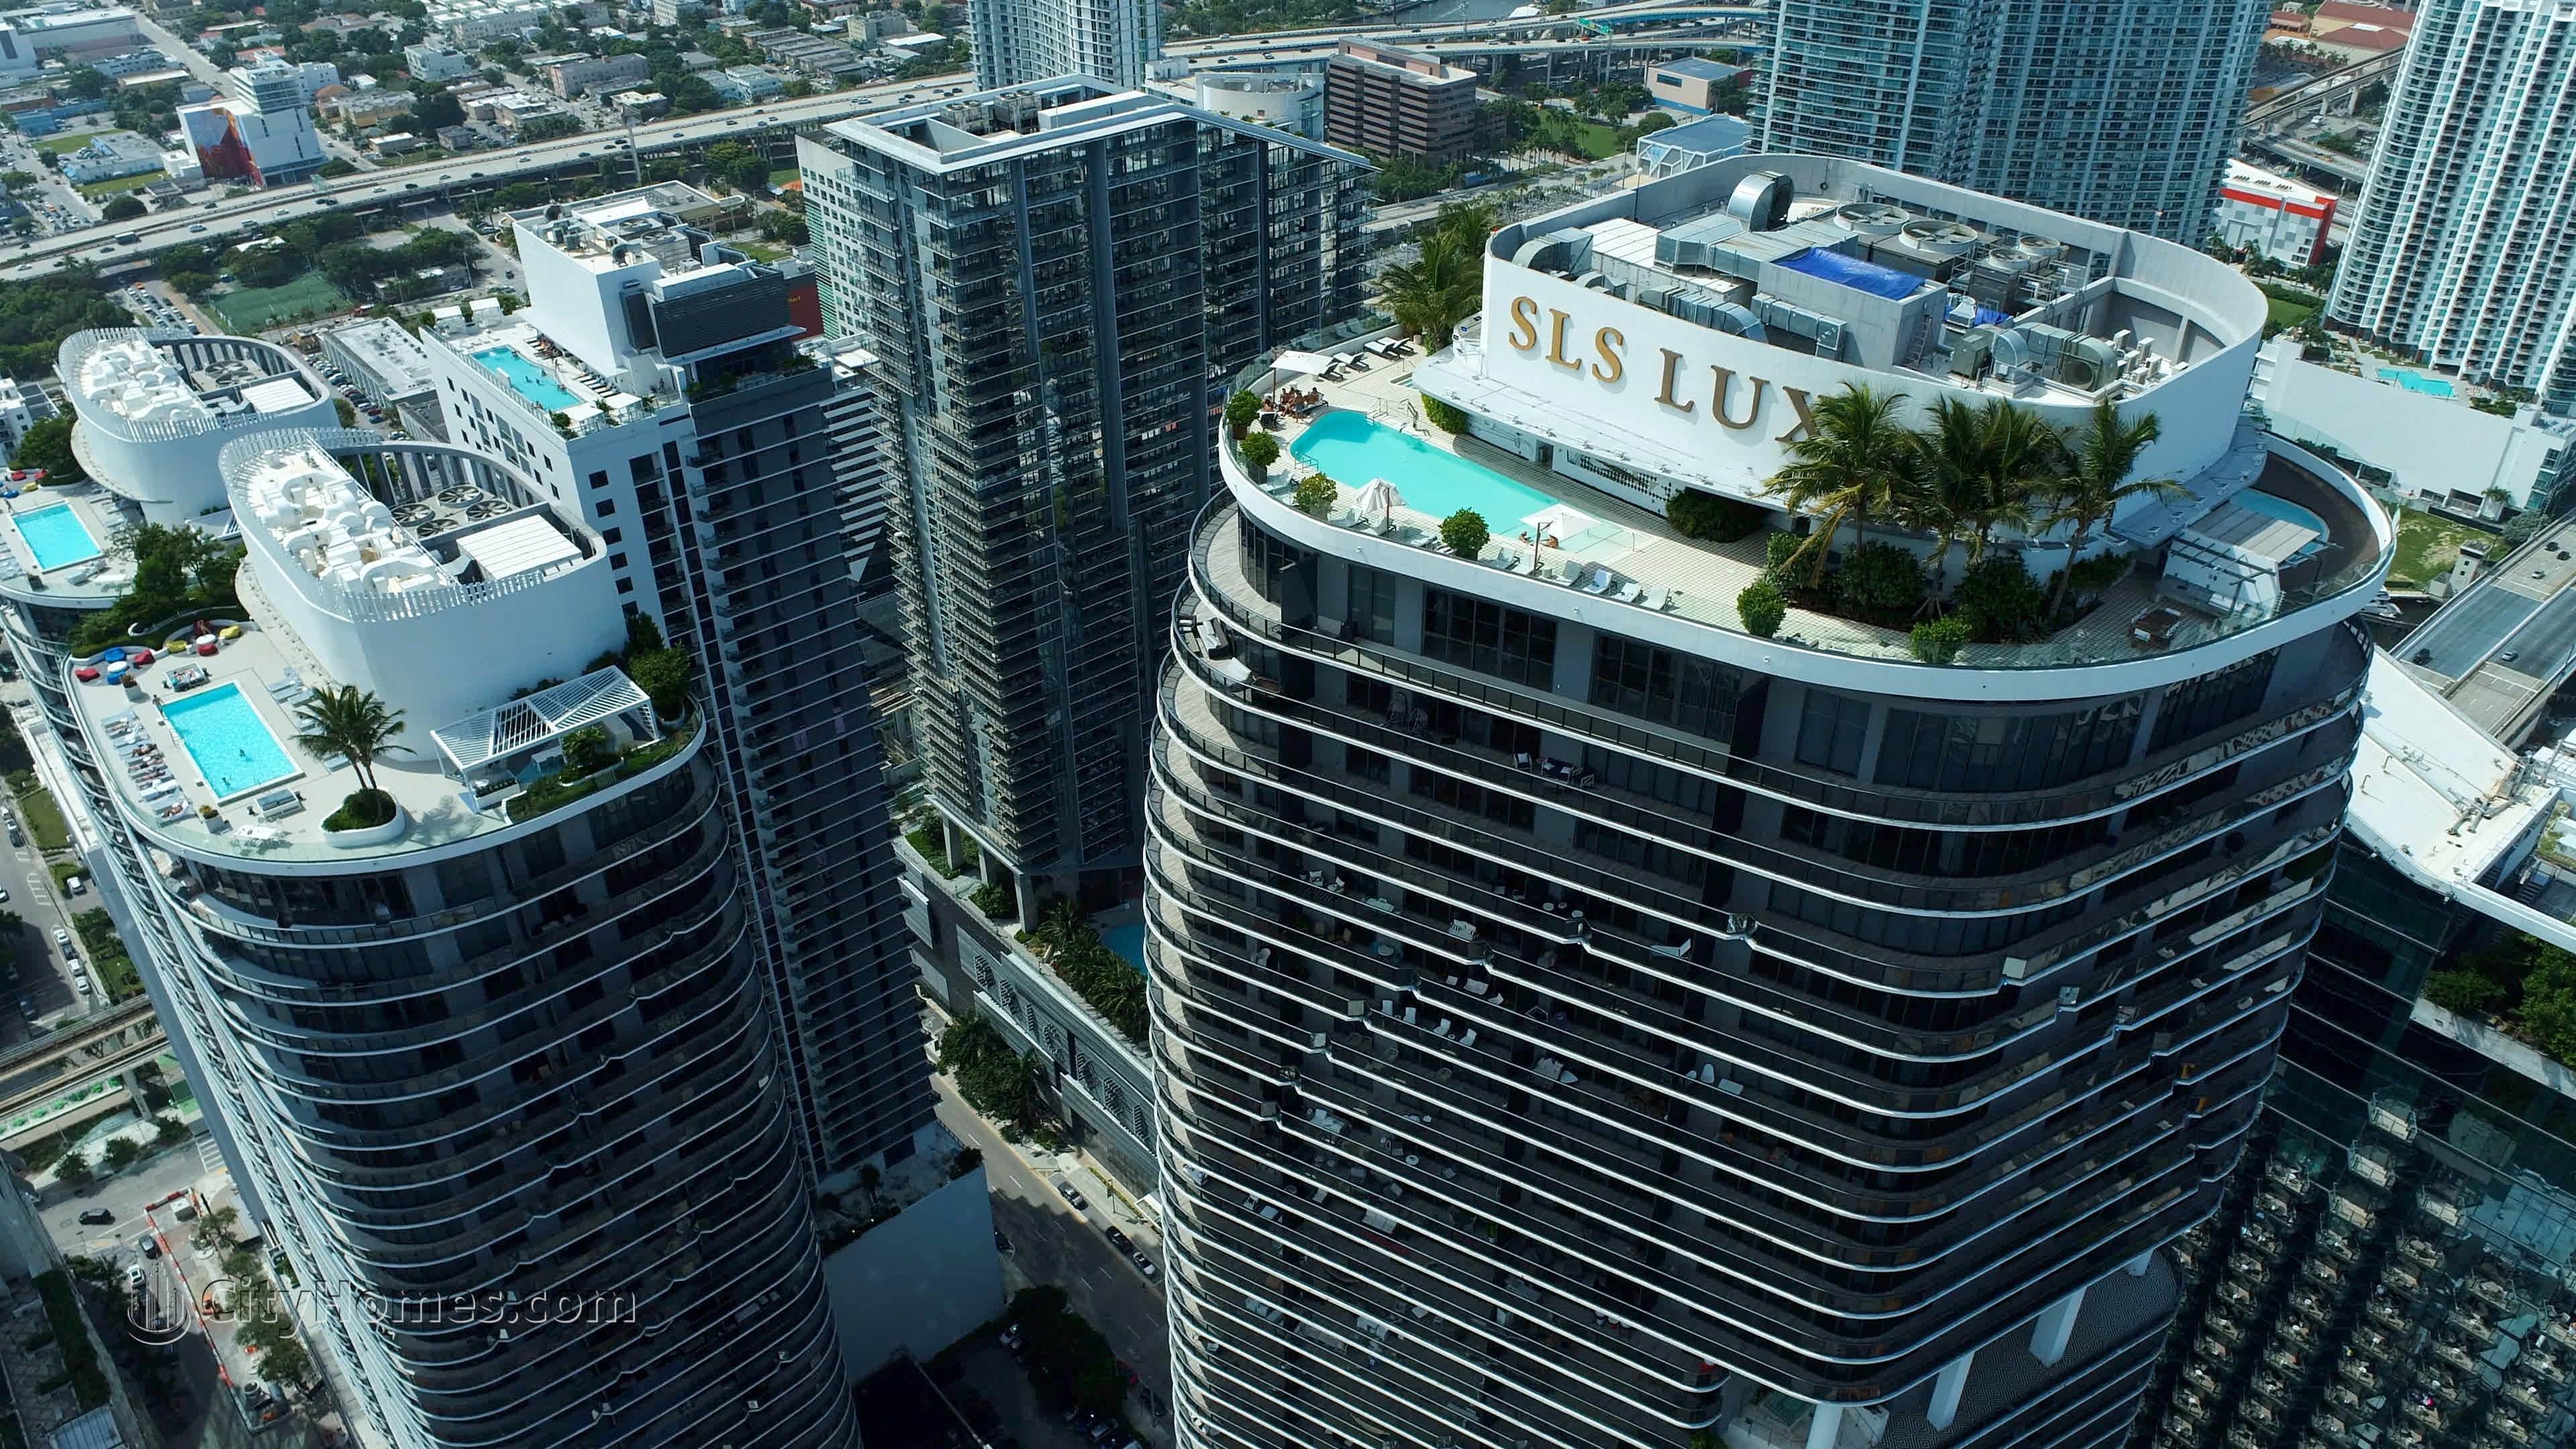 3. SLS Lux здание в 801 S Miami Avenue, Miami, FL 33139